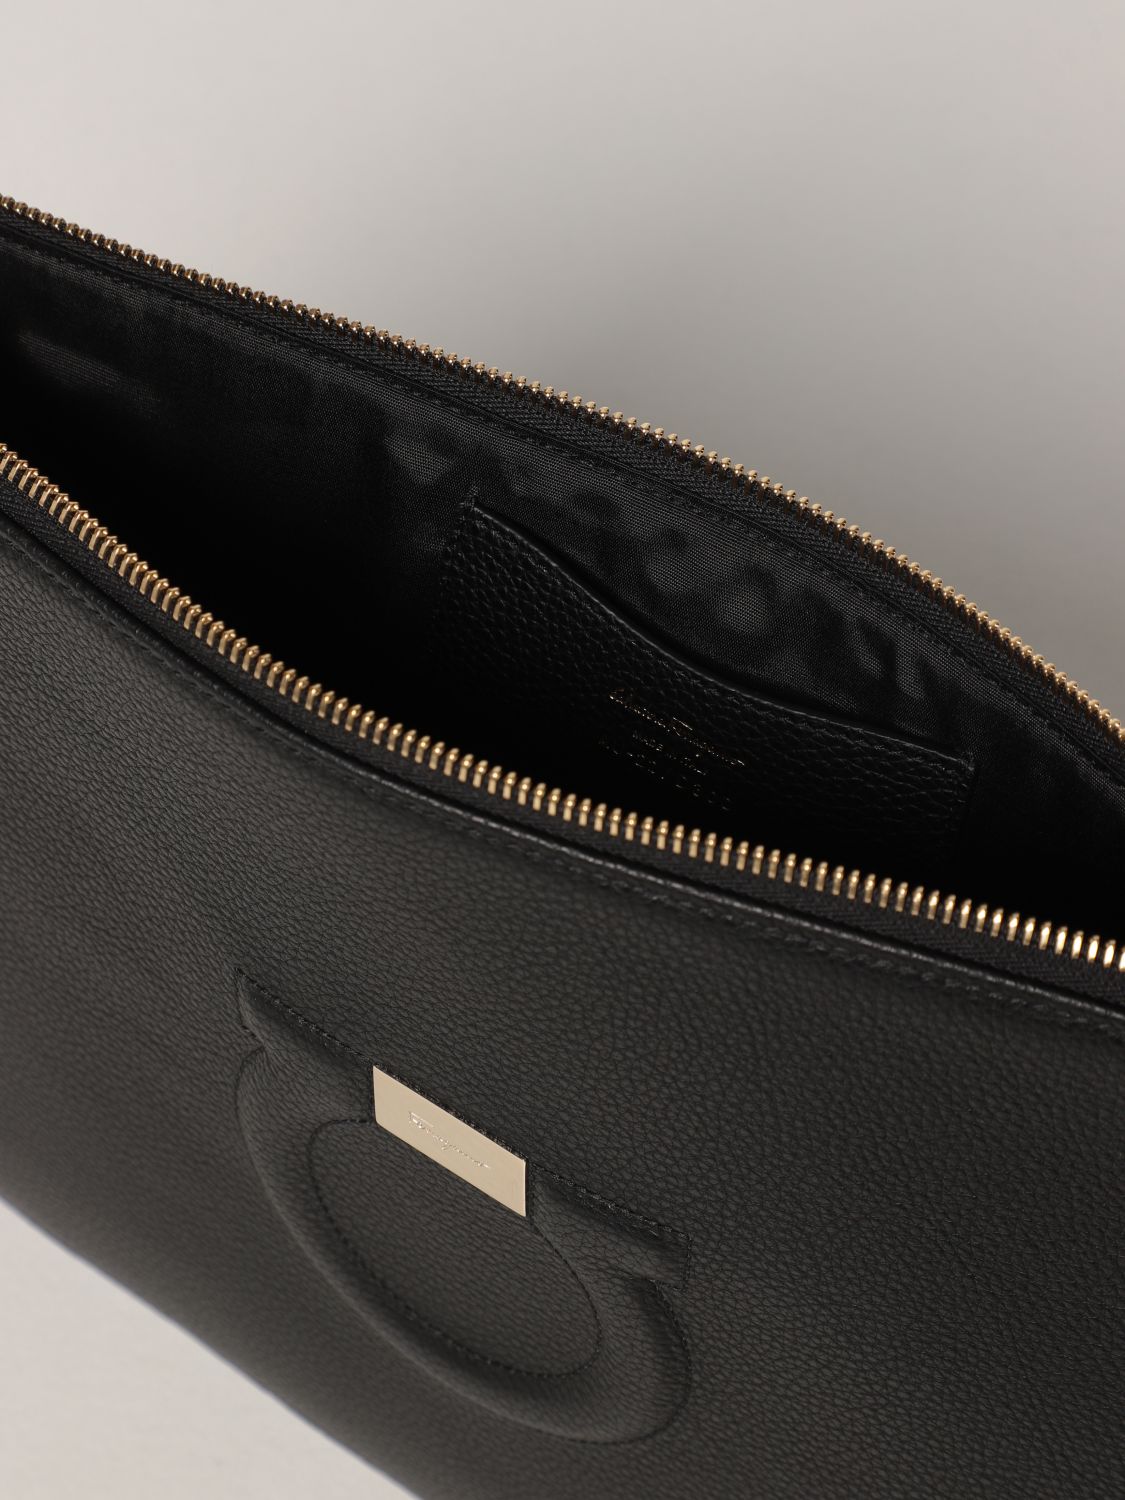 Clutch Salvatore Ferragamo: Salvatore Ferragamo Gancini clutch bag in grained leather black 5